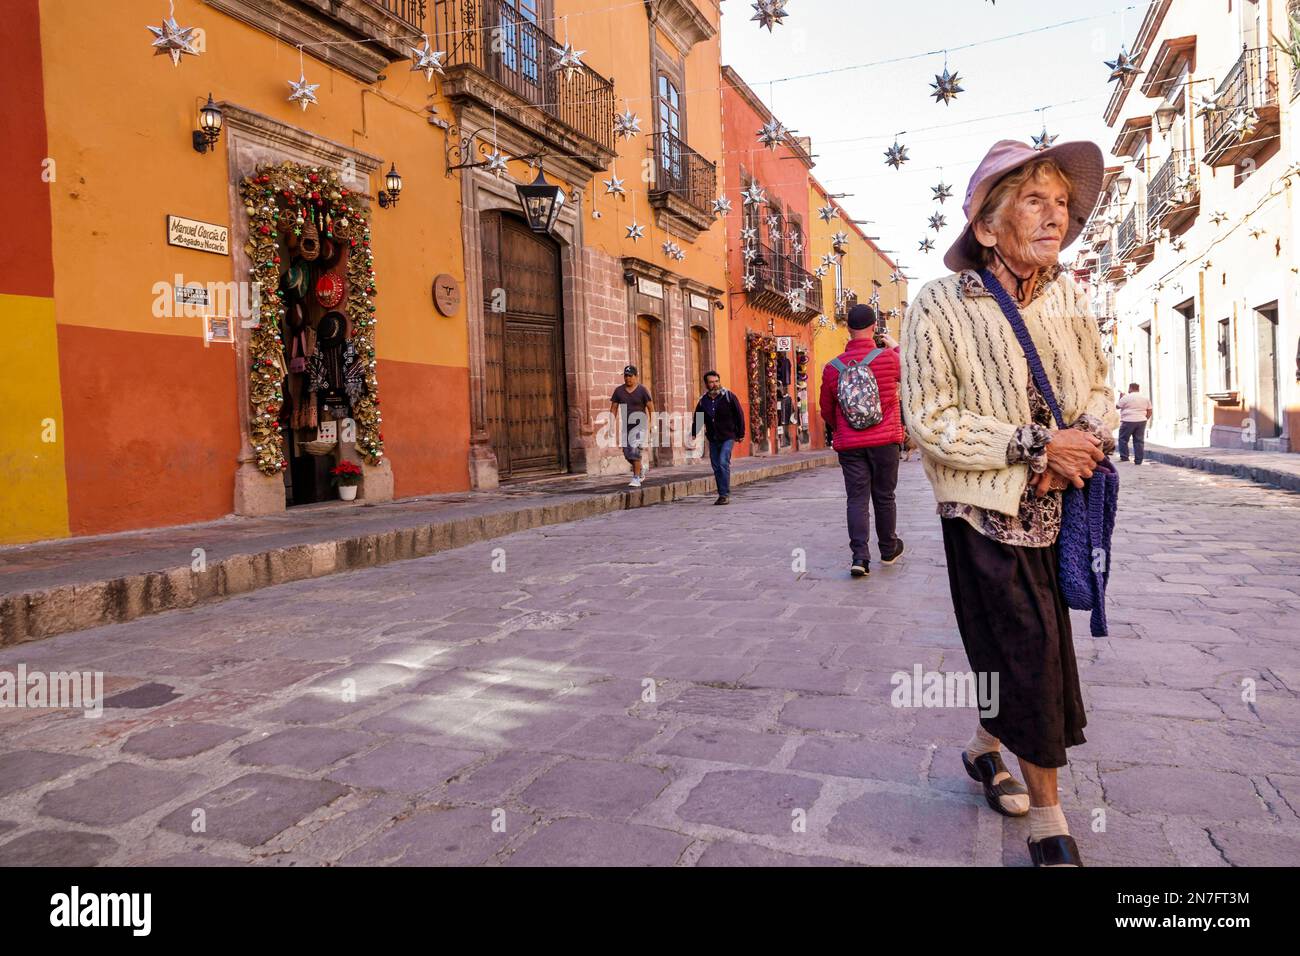 San Miguel de Allende Guanajuato Mexique, Historico Centre historique central Zona Centro, pavés suspendus étoiles décorations de Noël, femme femme femme dame Banque D'Images